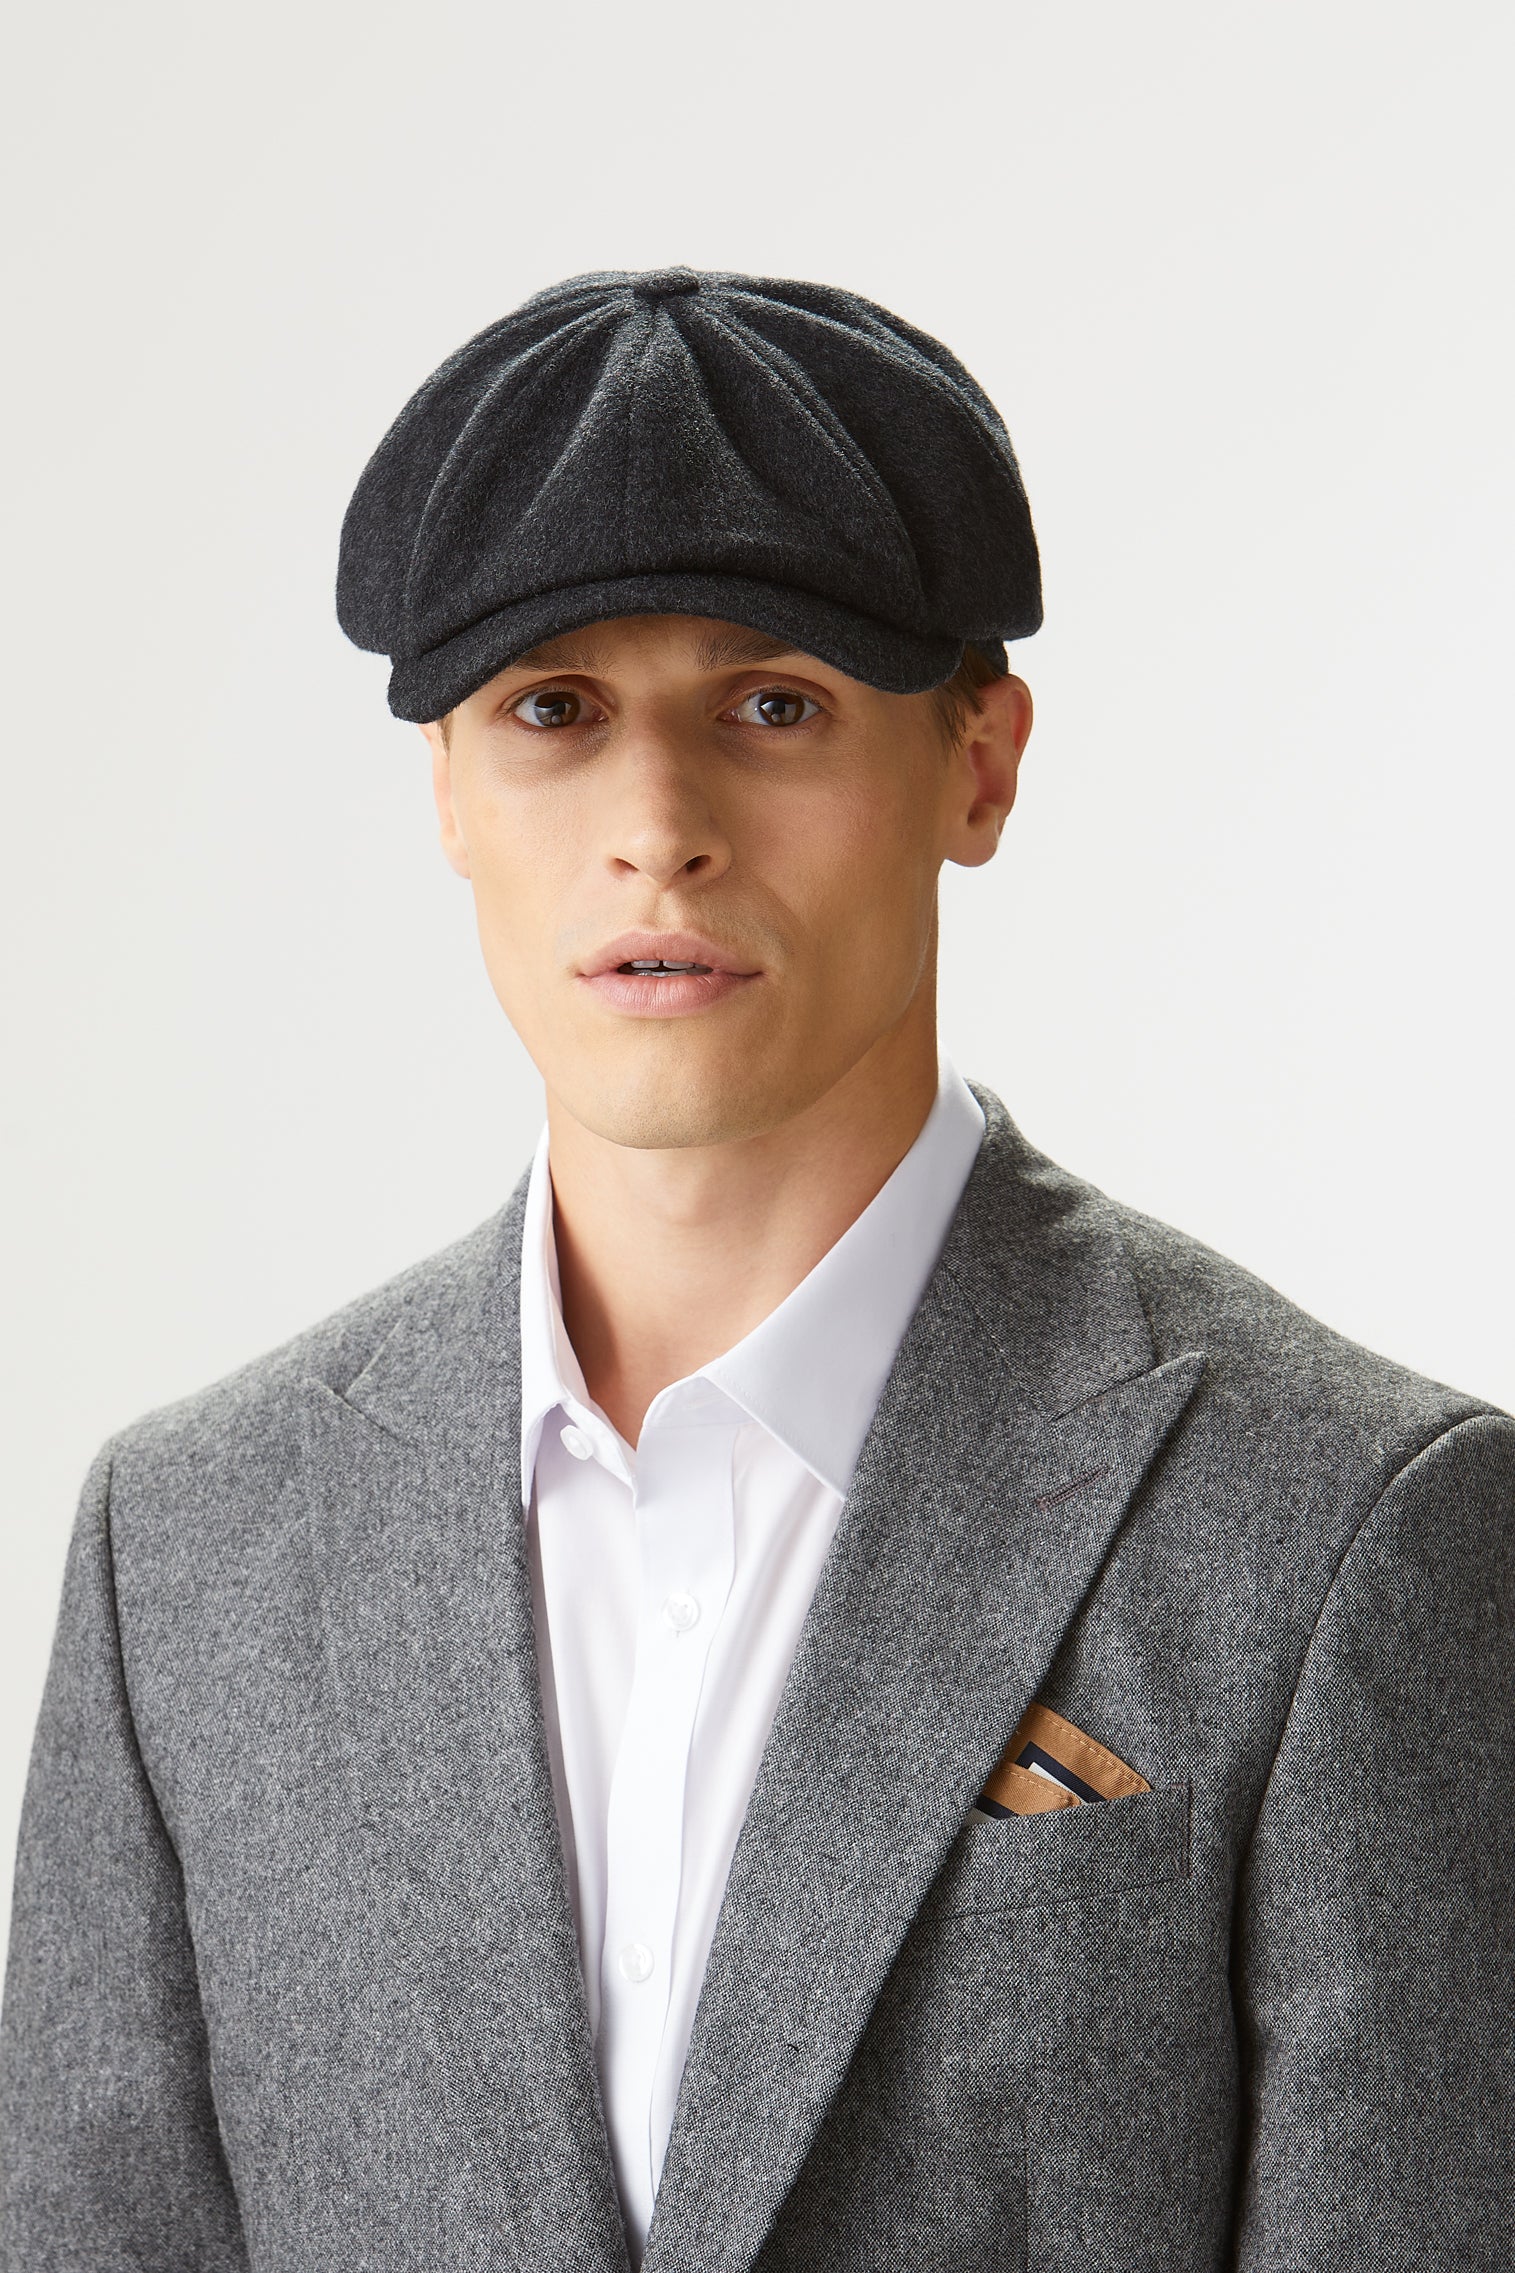 Escorial Wool Newsboy Cap - All Ready to Wear - Lock & Co. Hatters London UK